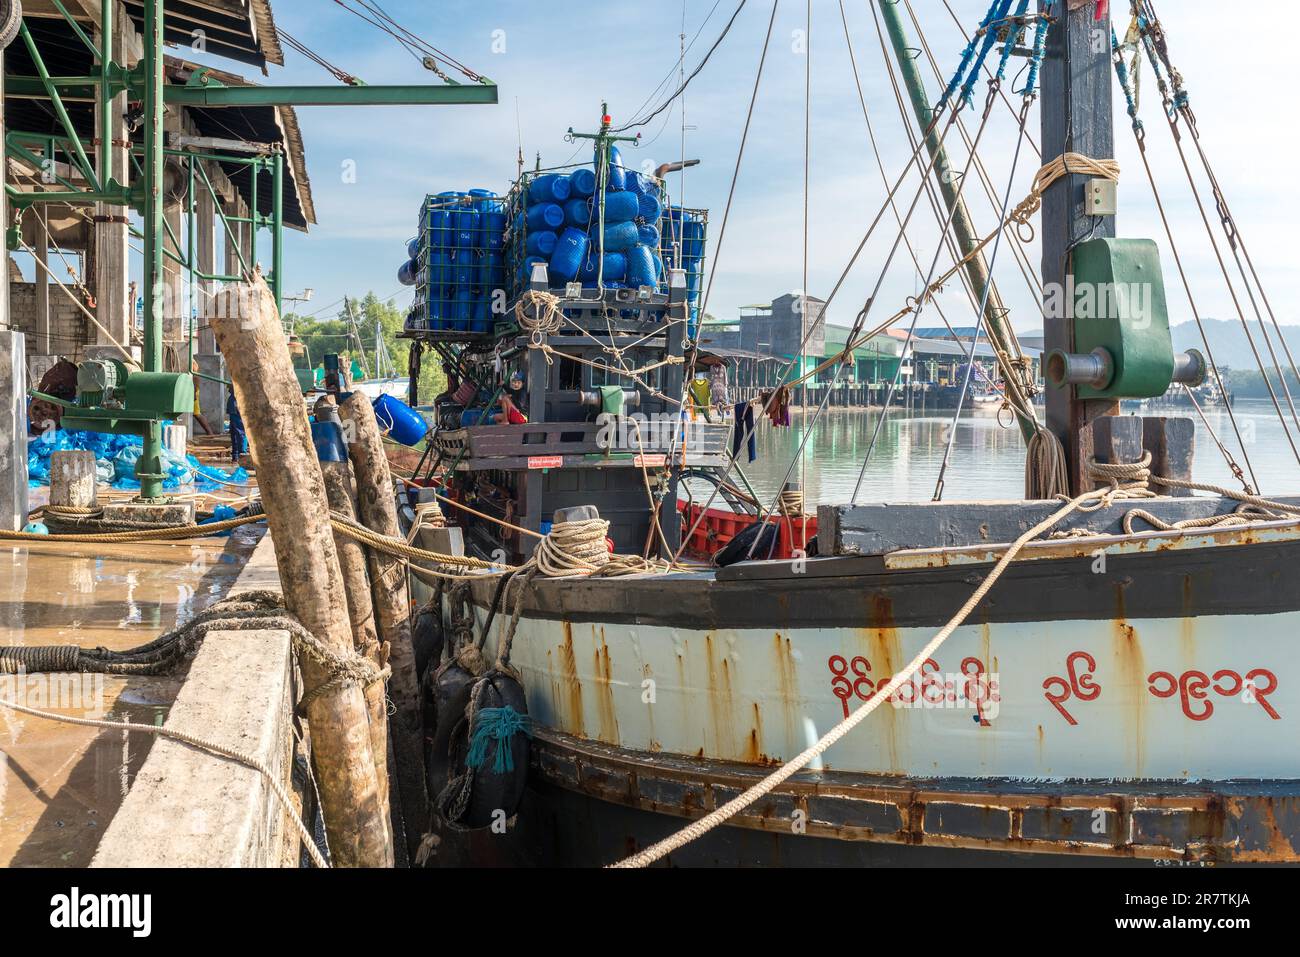 Le chalutier de pêche est amarré à la jetée dans la zone industrielle du port de pêche de Ranong, dans le sud-ouest de la Thaïlande Banque D'Images